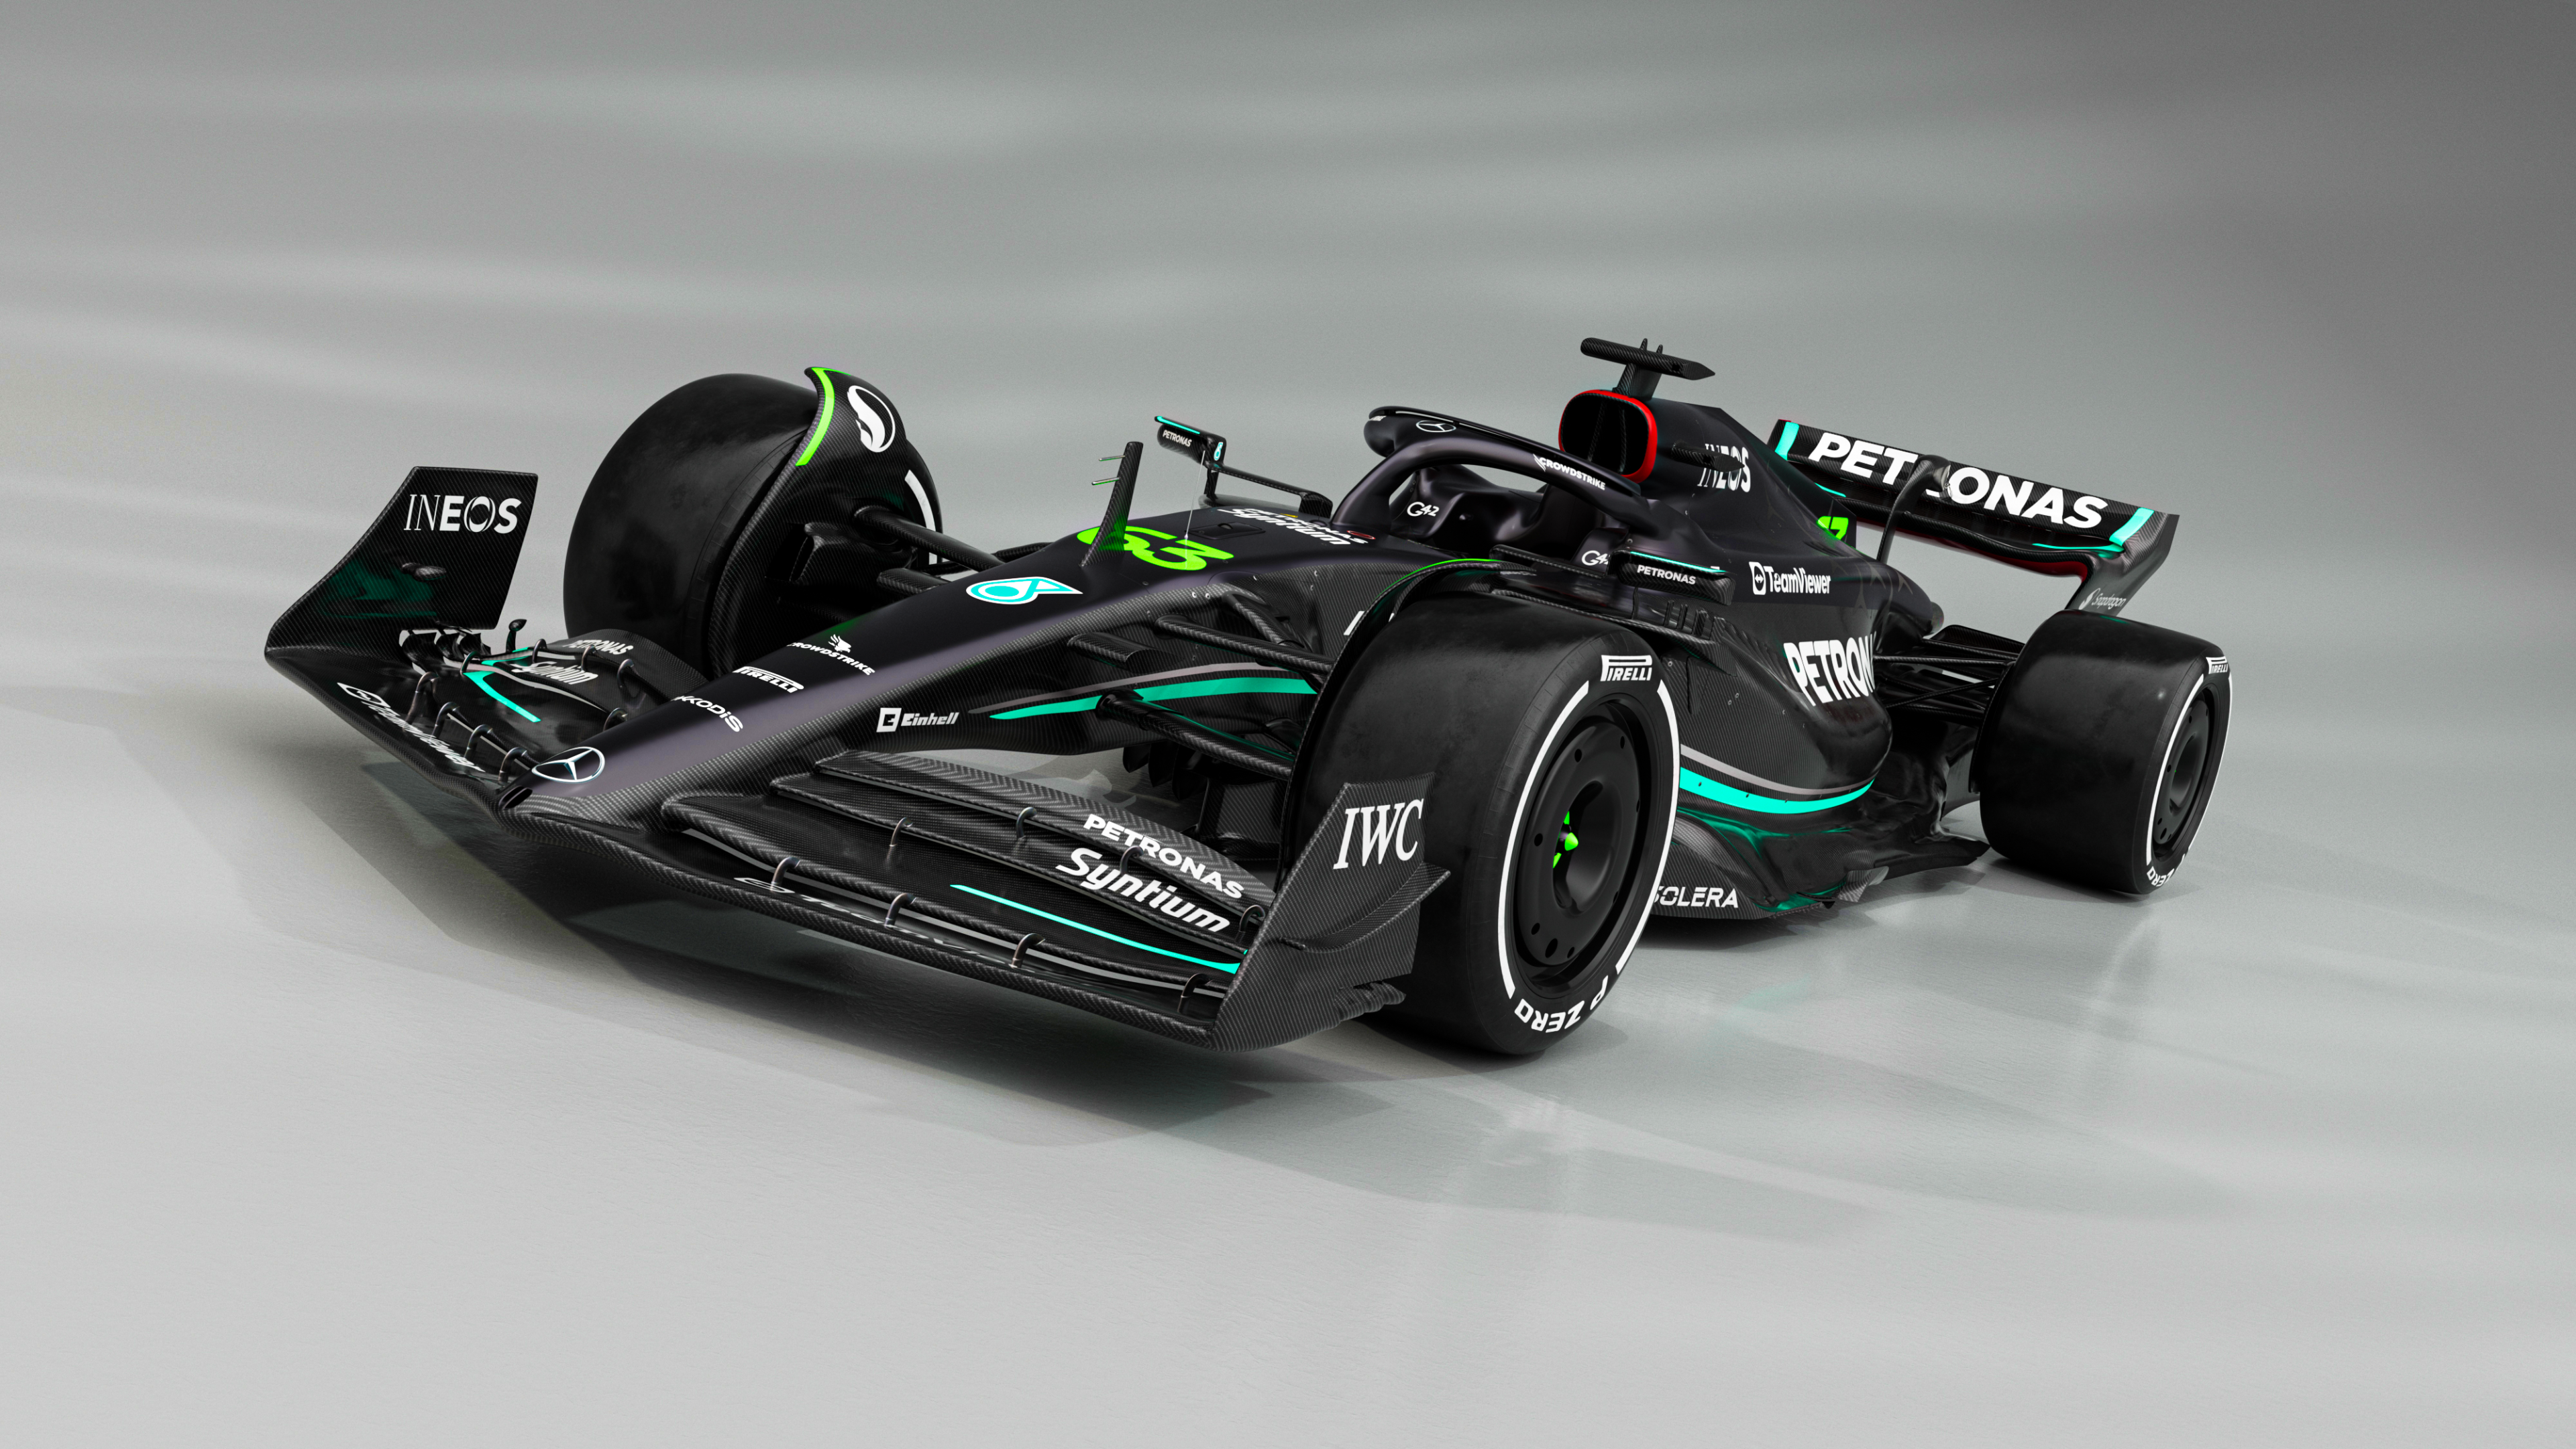 Thưởng thức hình nền Mercedes-AMG PETRONAS F1 đầy sức mạnh và tốc độ! Hình ảnh rực rỡ sẽ cung cấp cho bạn niềm đam mê về xe hơi và đua xe F